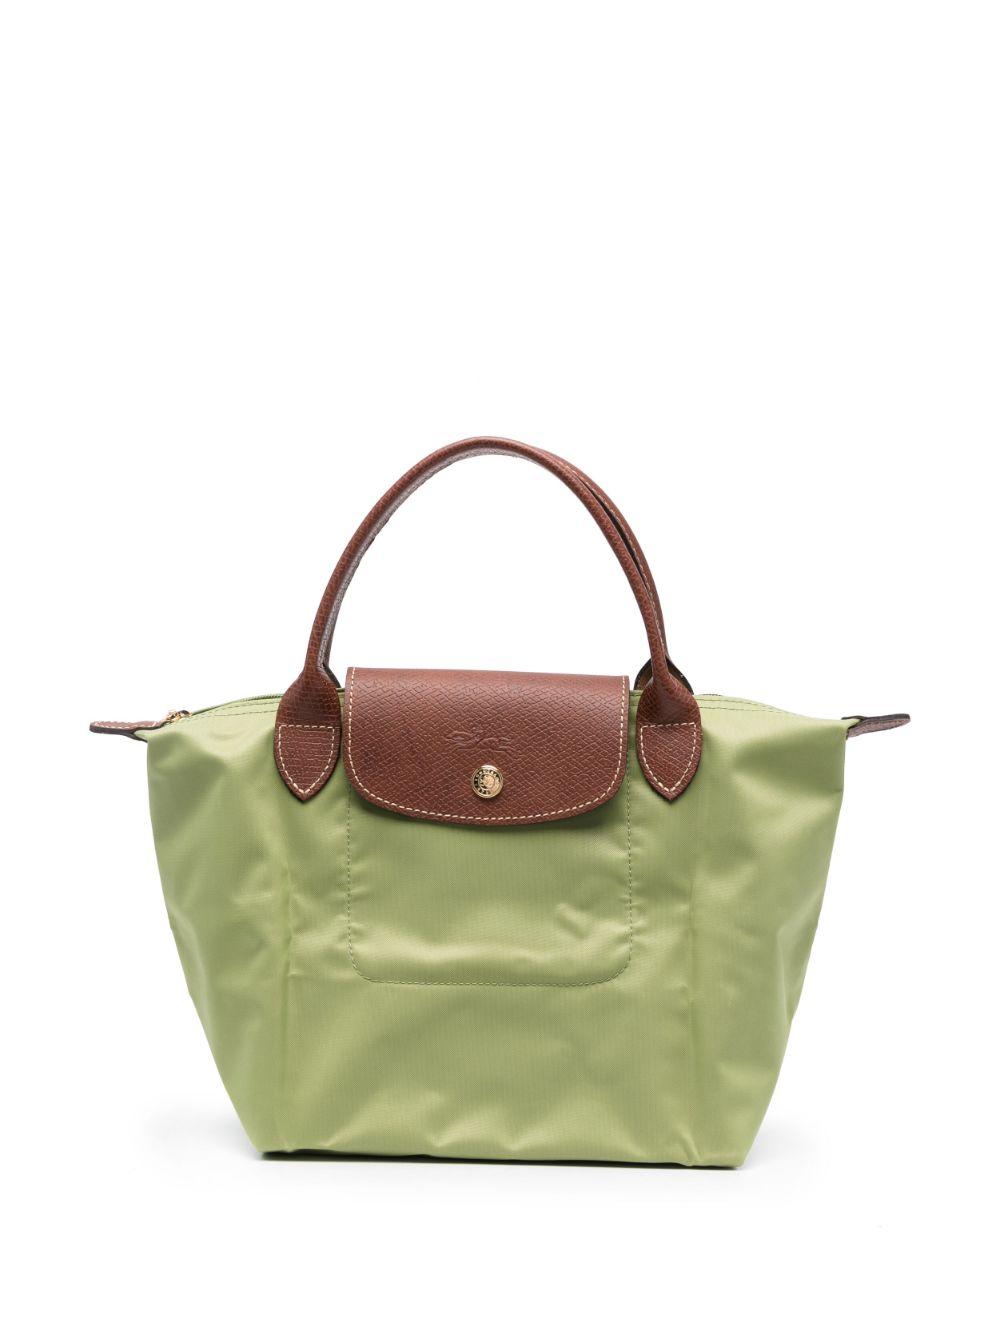 Longchamp Women's Green Tote Bags